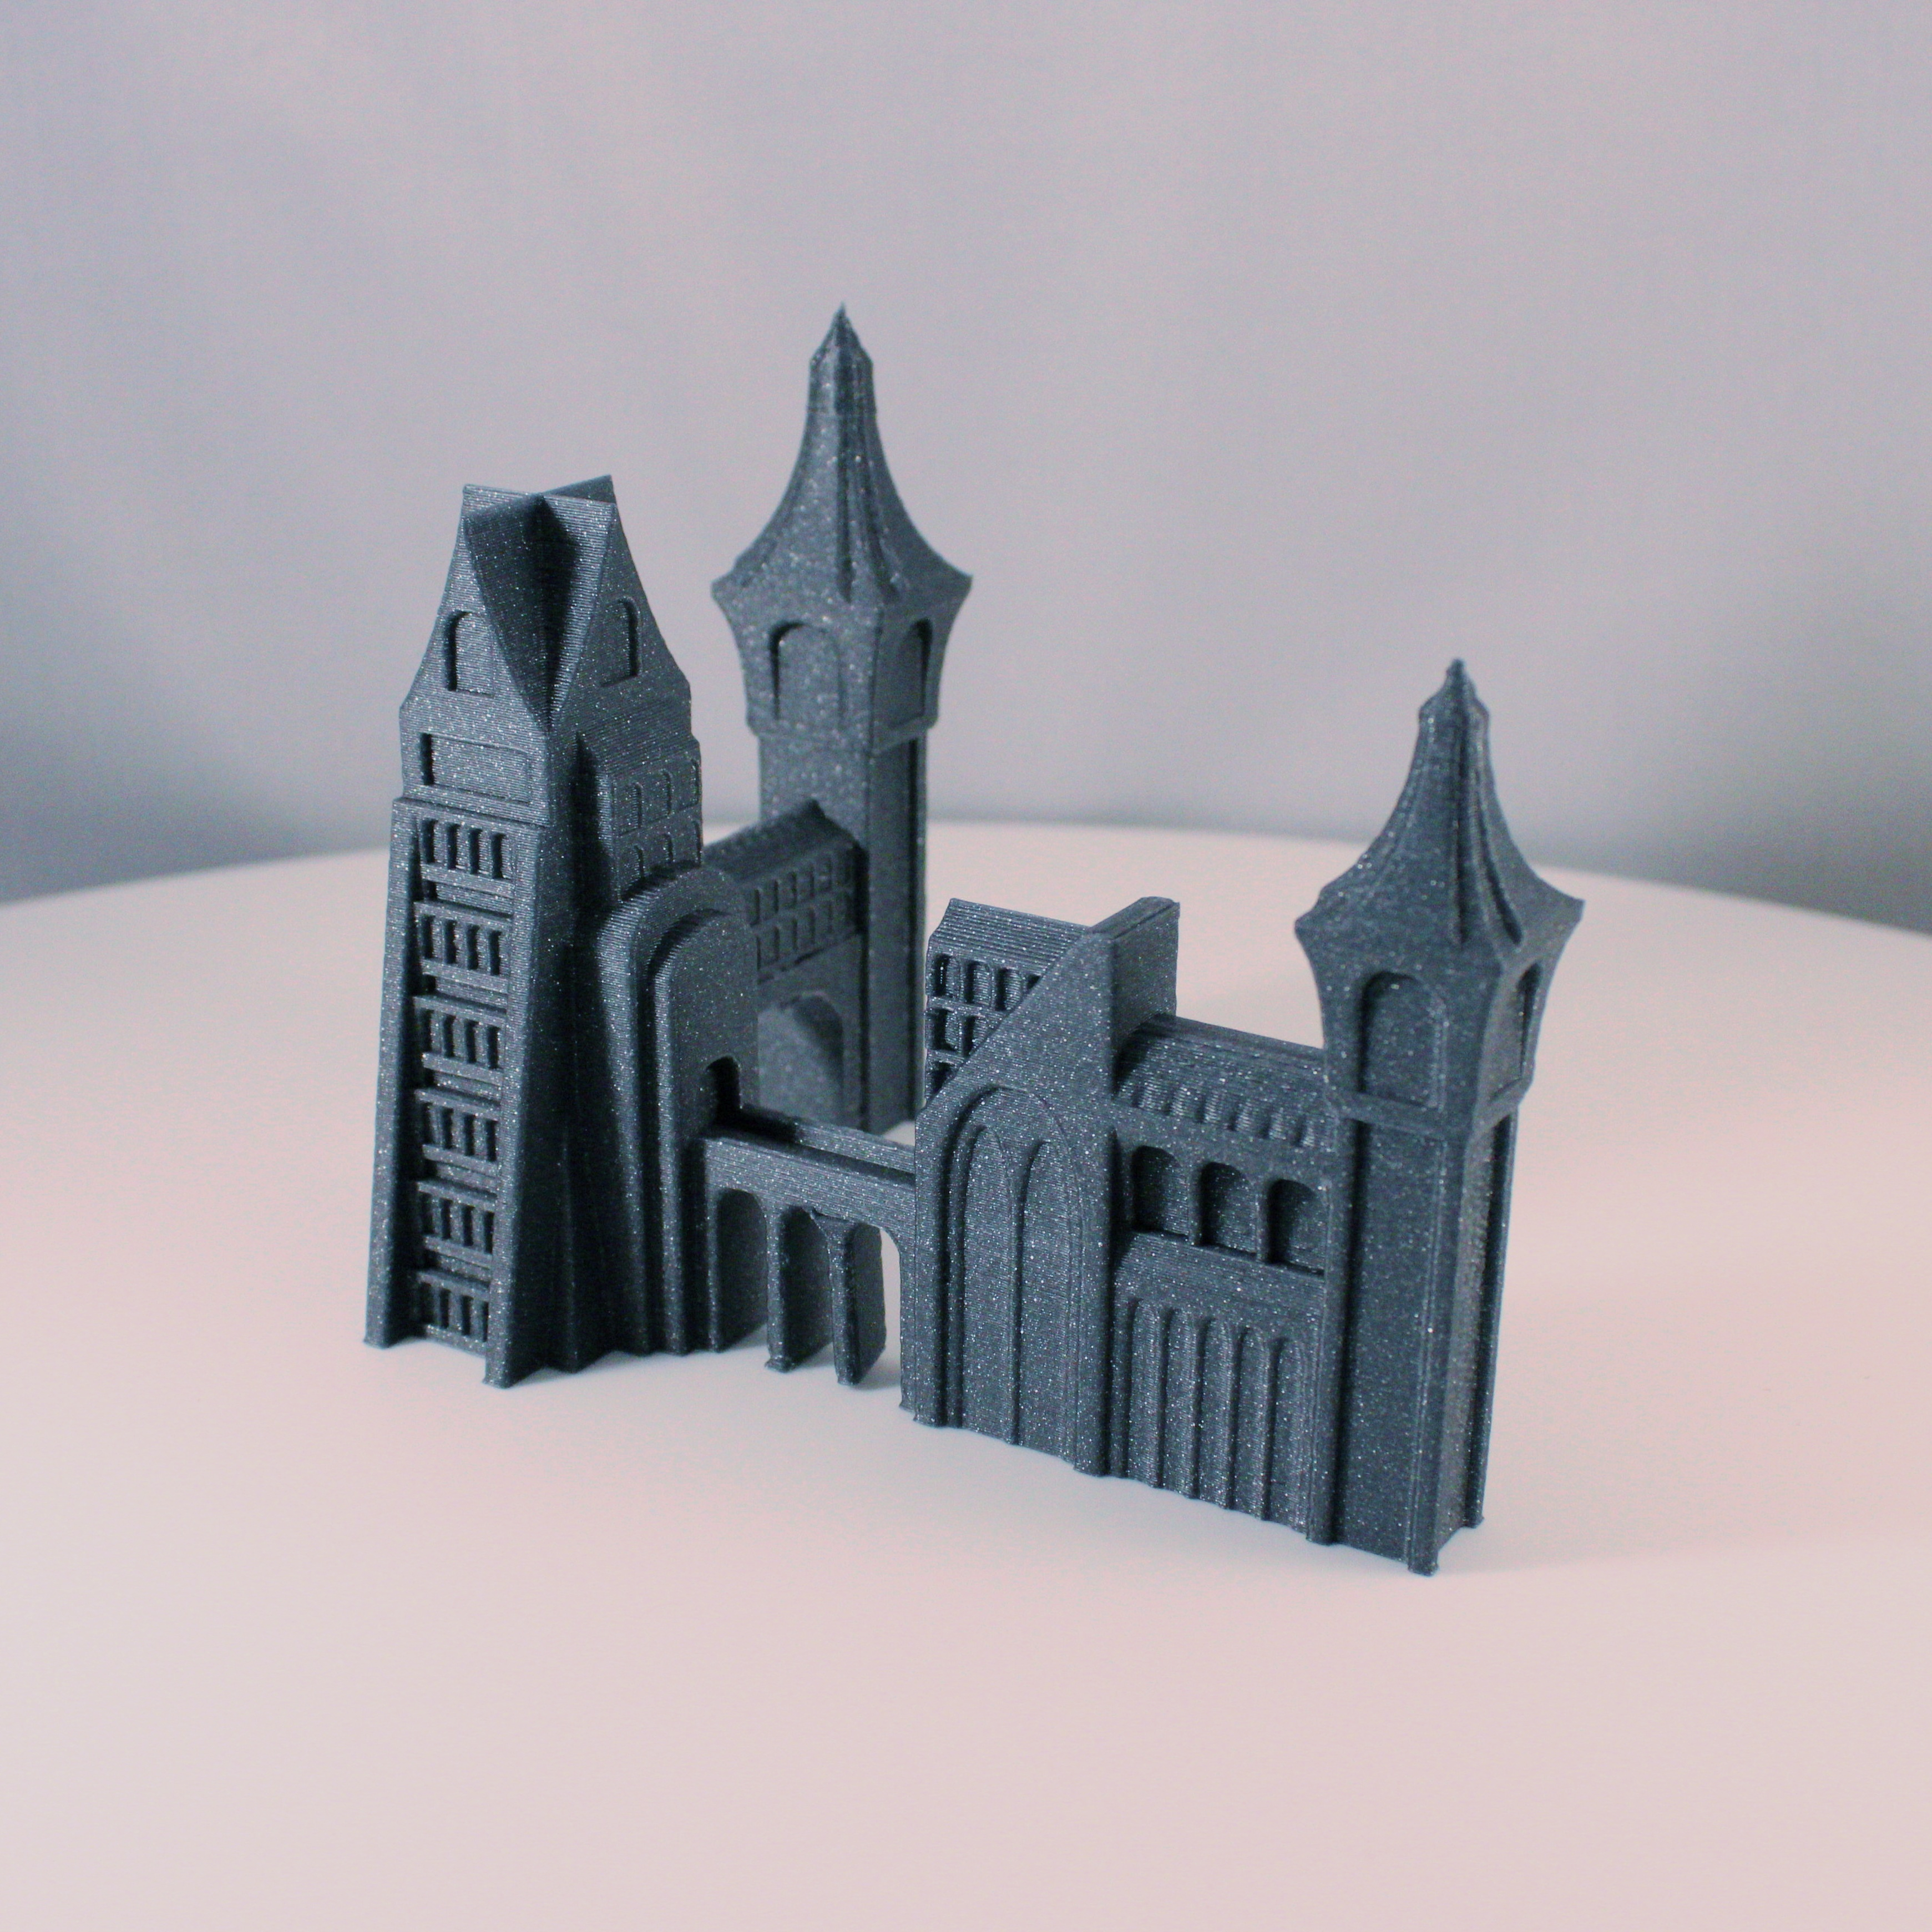 Printouts Of Castle Models